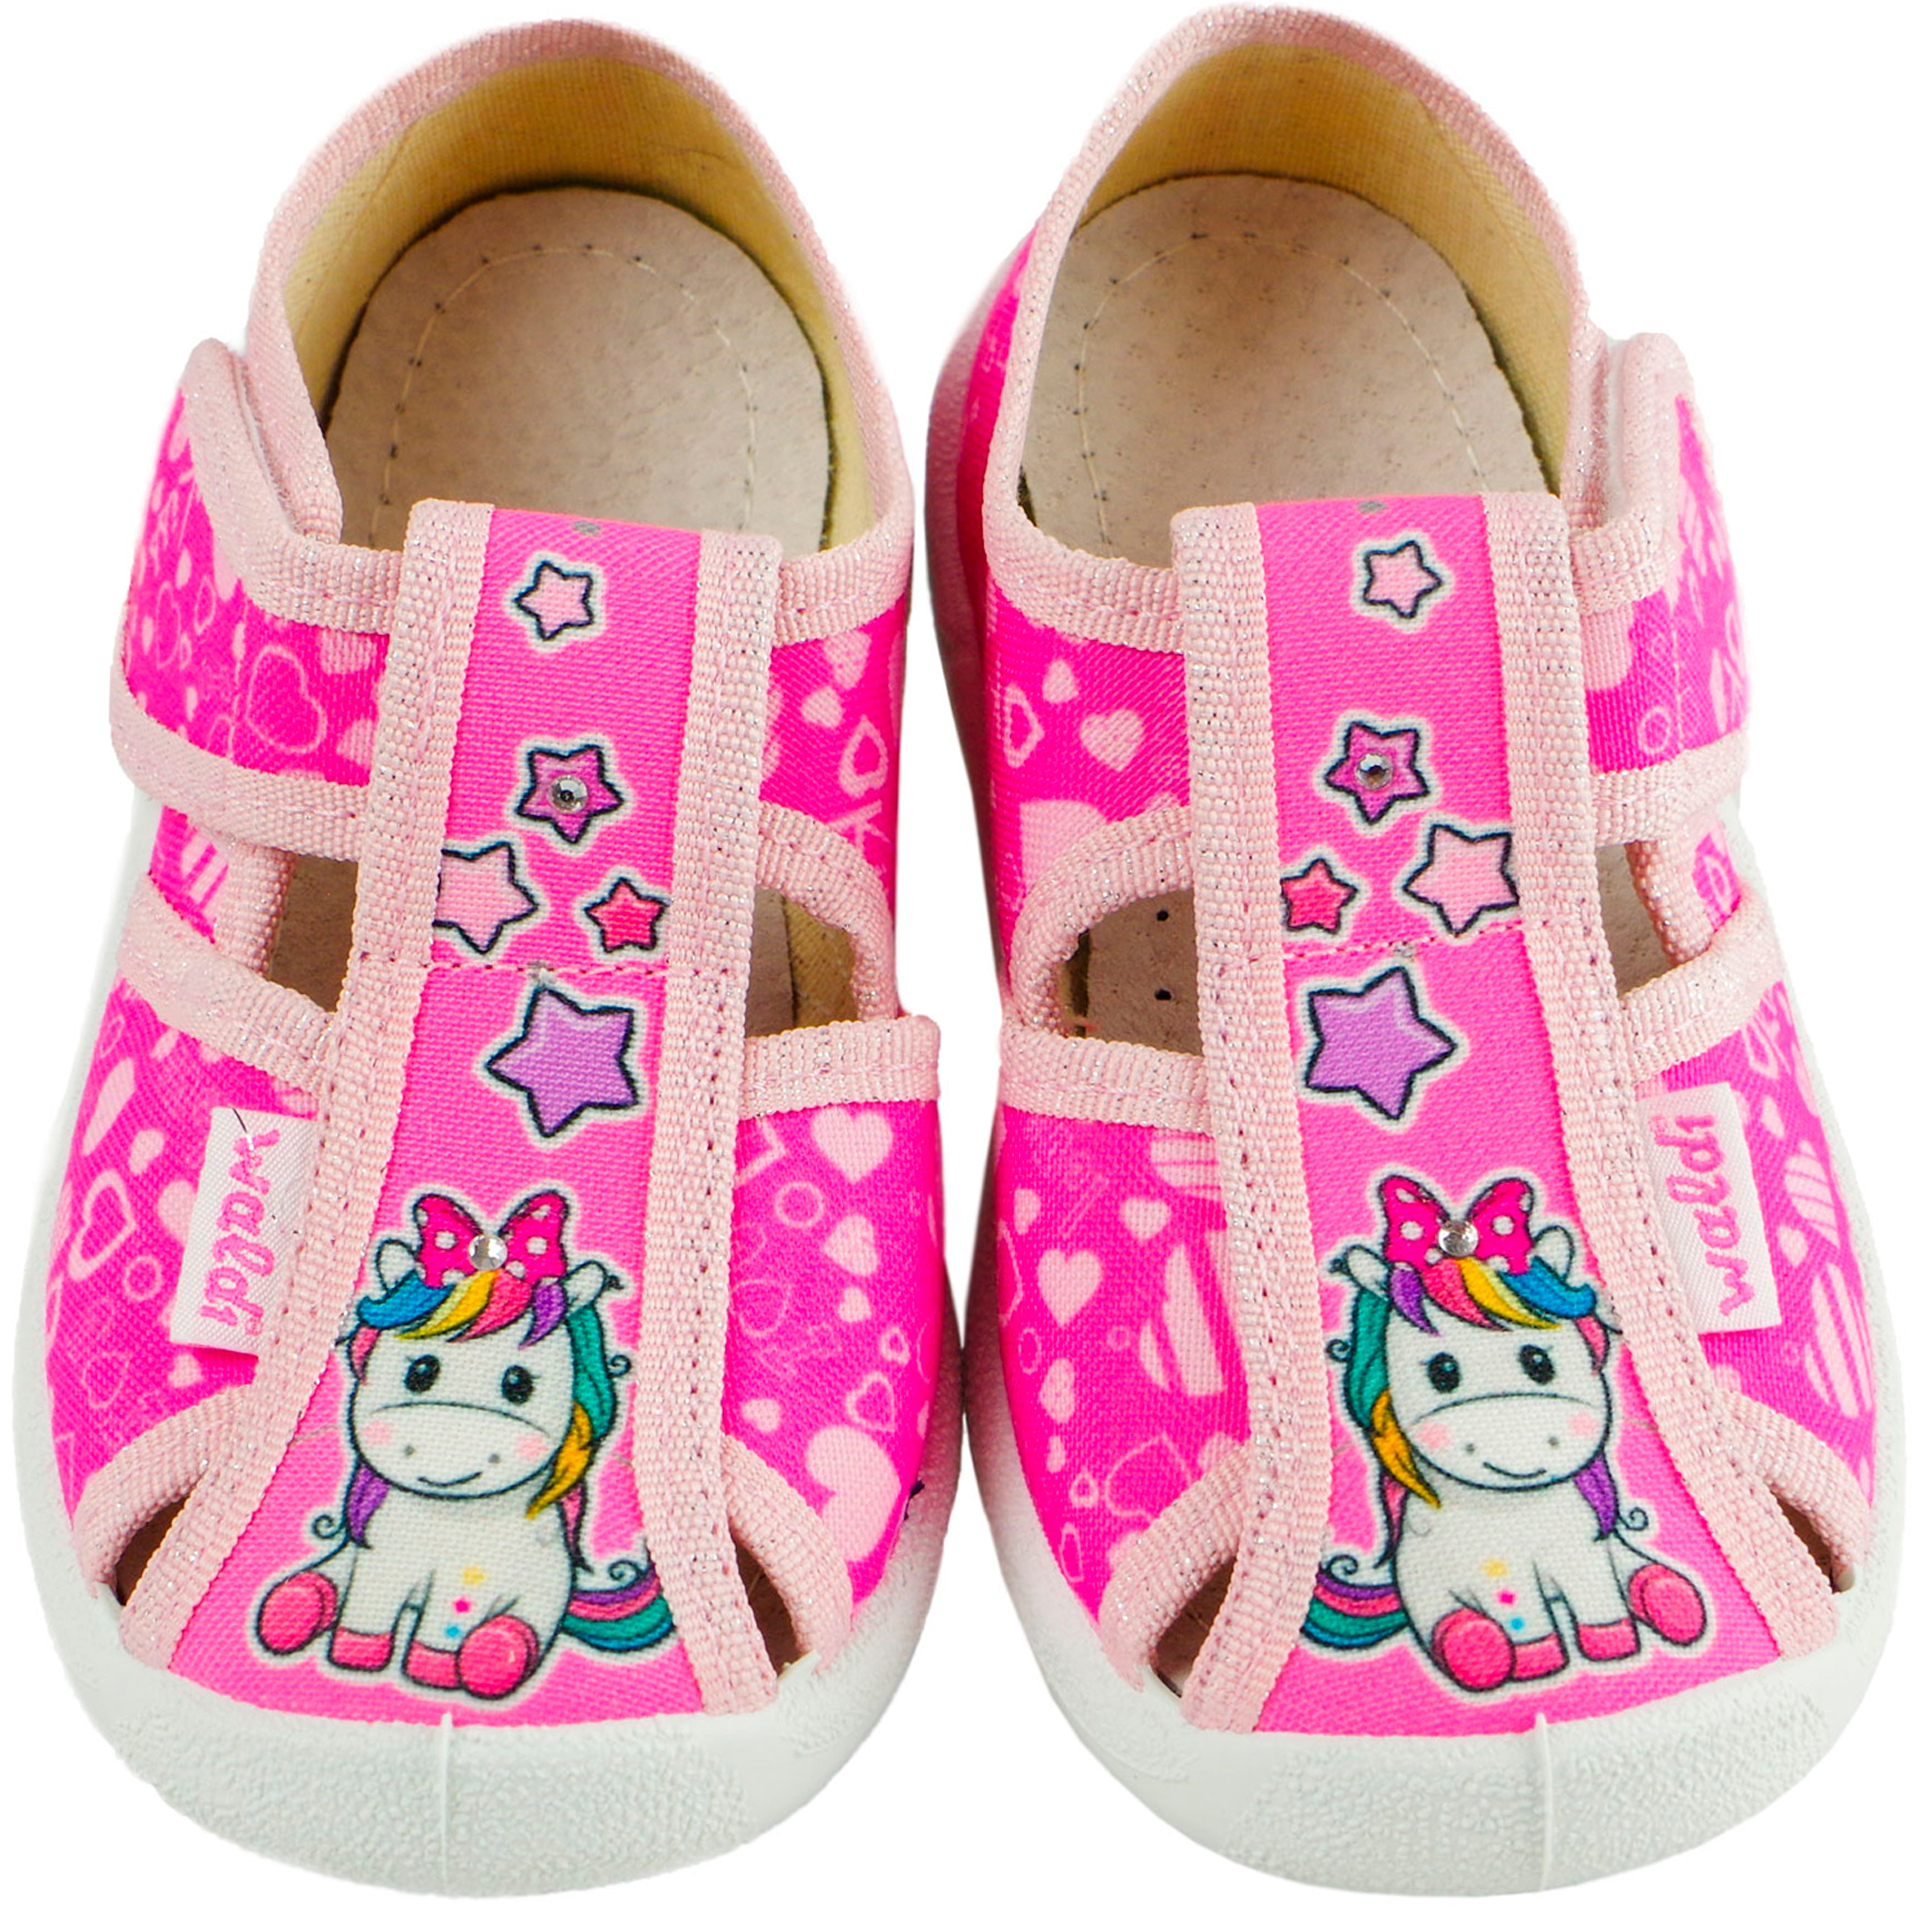 Текстильная обувь для девочек Тапочки Маша (2019) цвет Розовый 21-27 размеры – Sole Kids. Фото 3